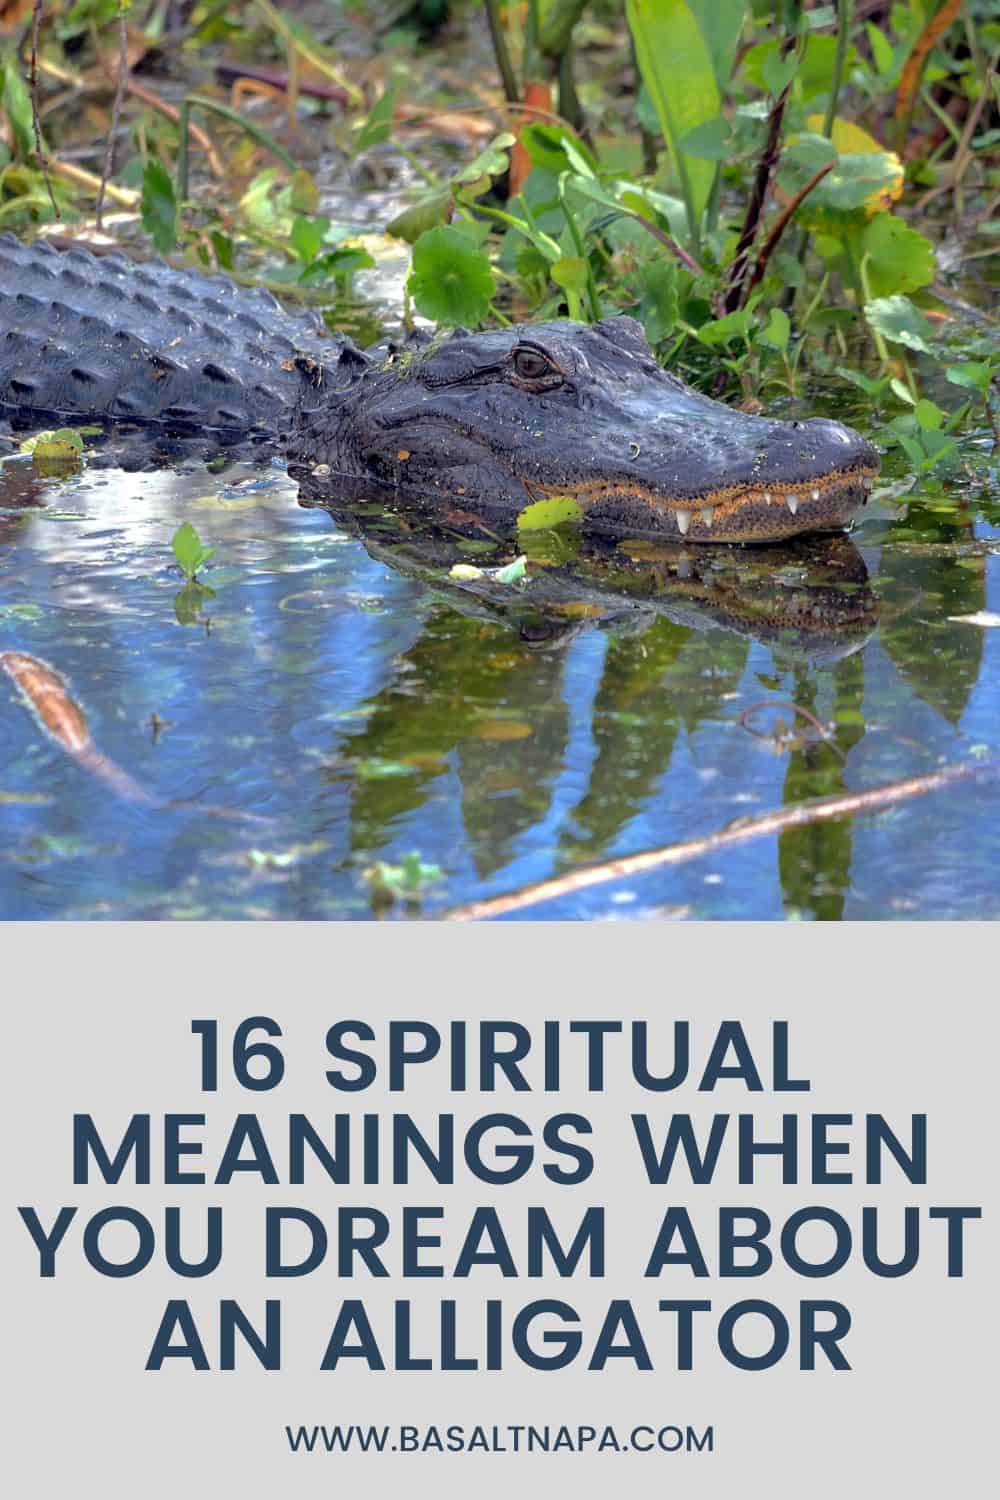 Spiritual Symbolism of an Alligator Dream